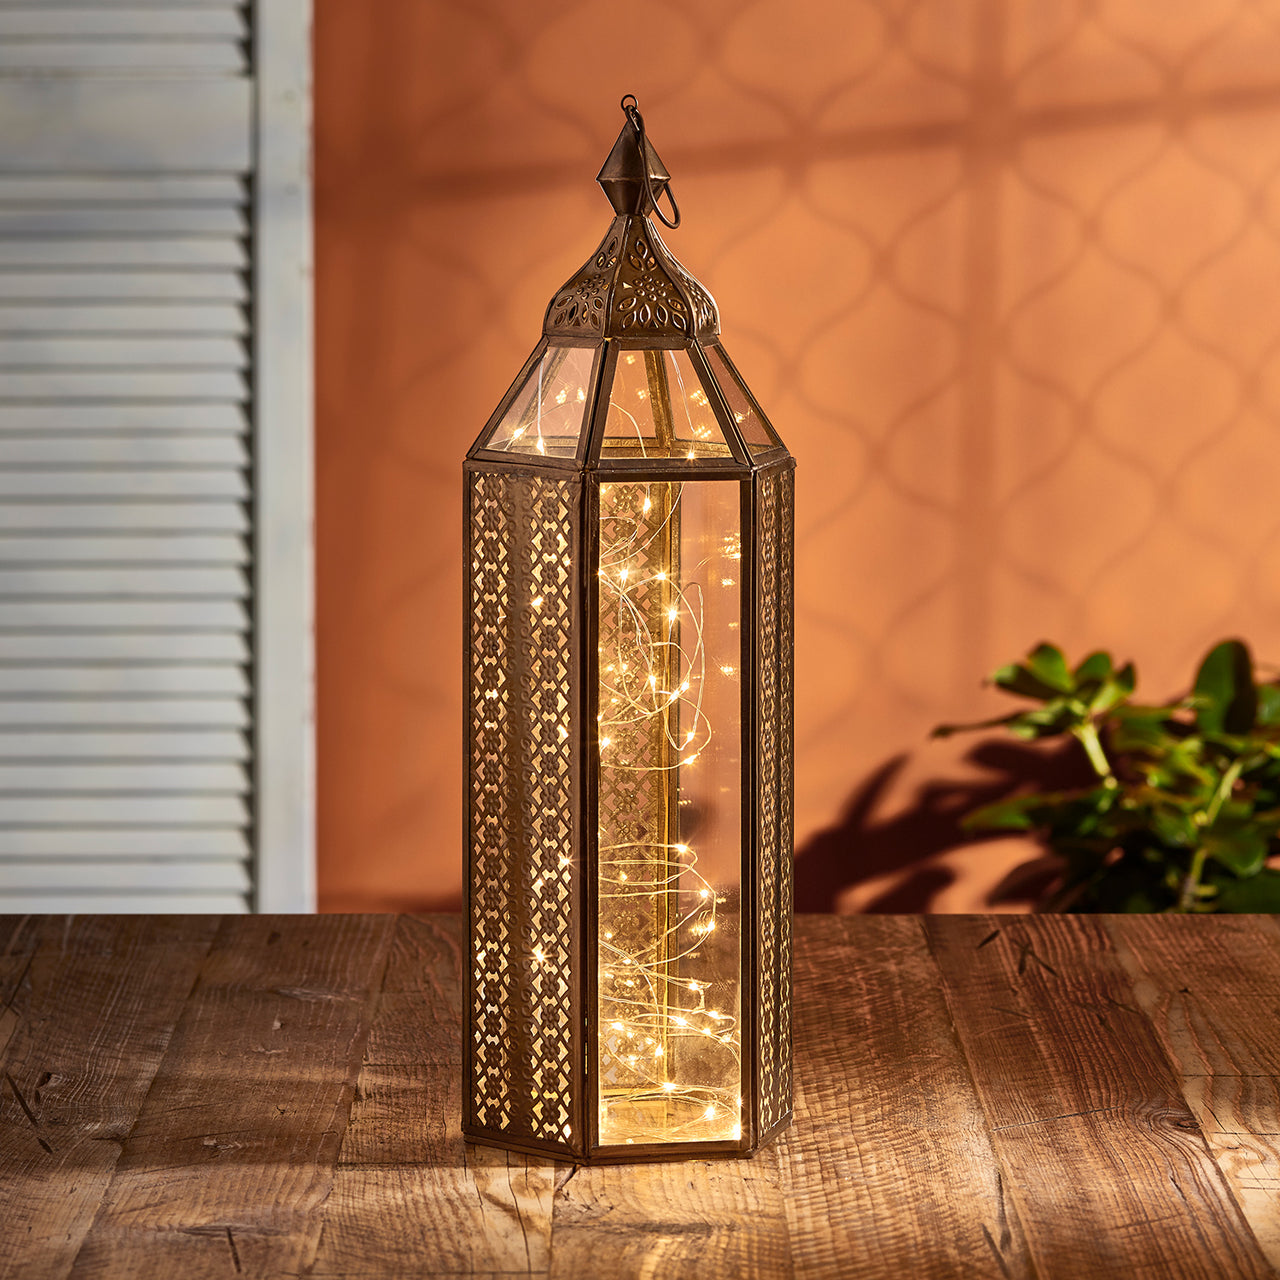 Asilah Large Artisan Moroccan Lantern with Micro Lights